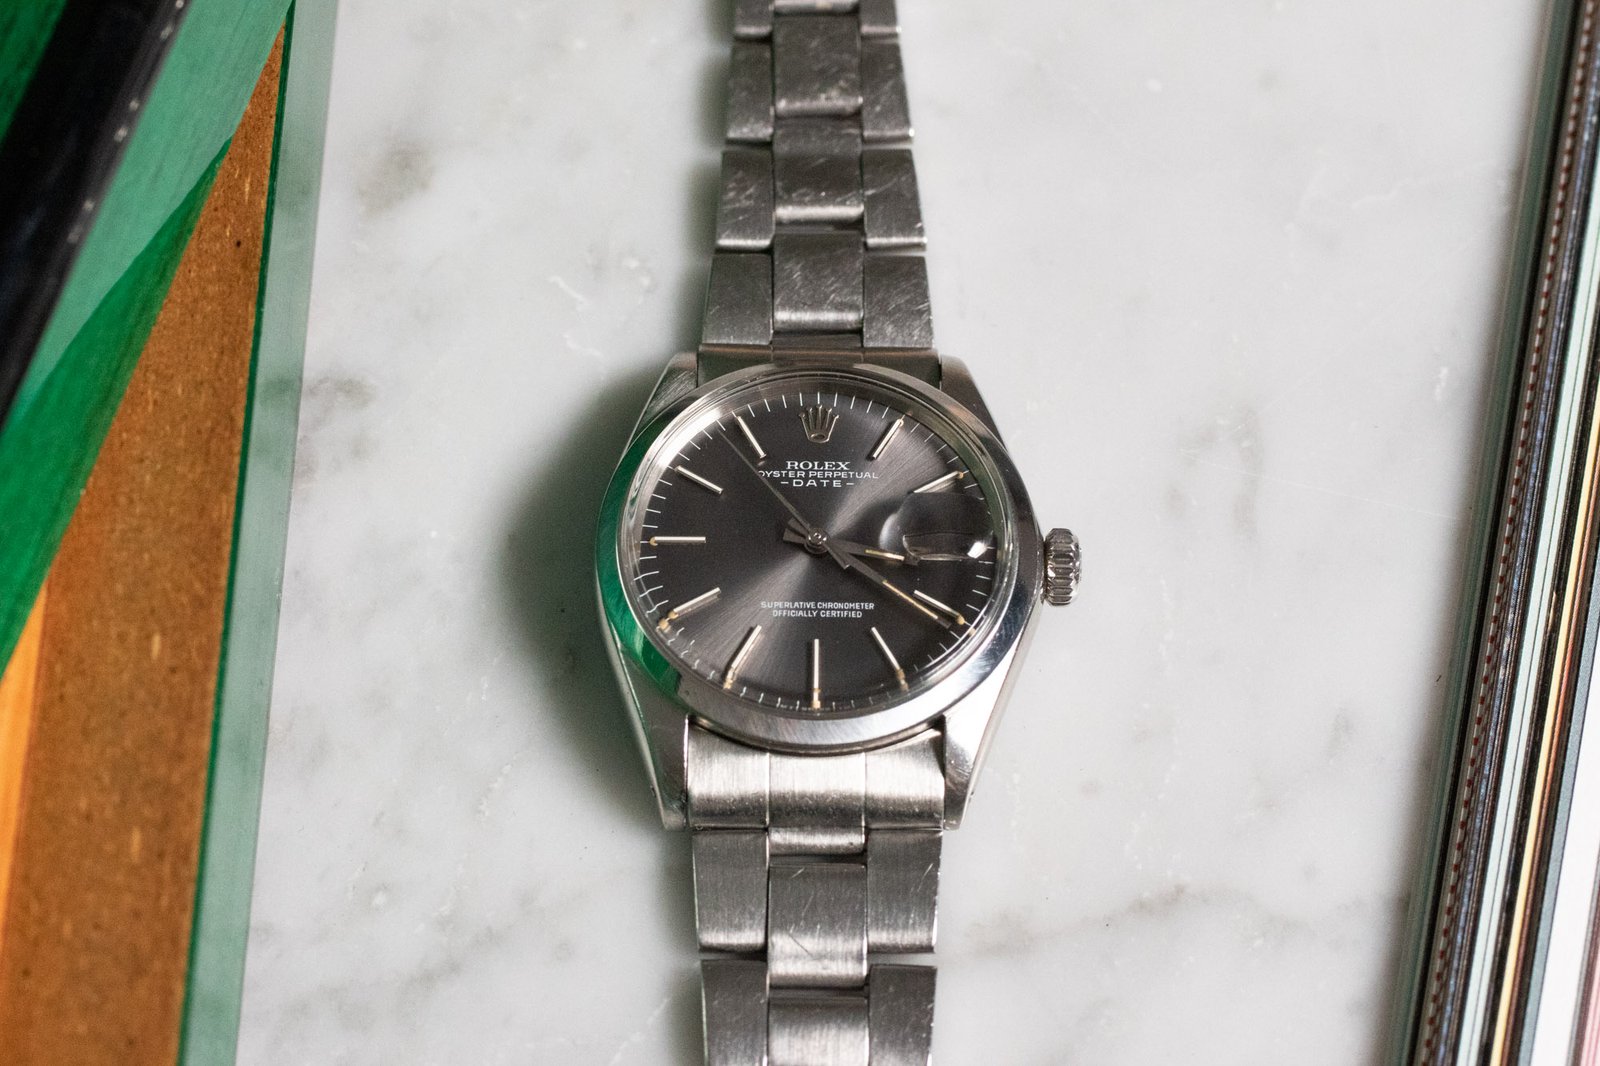 Rolex Date 1500 - Selection of vintage watches Joseph Bonnie